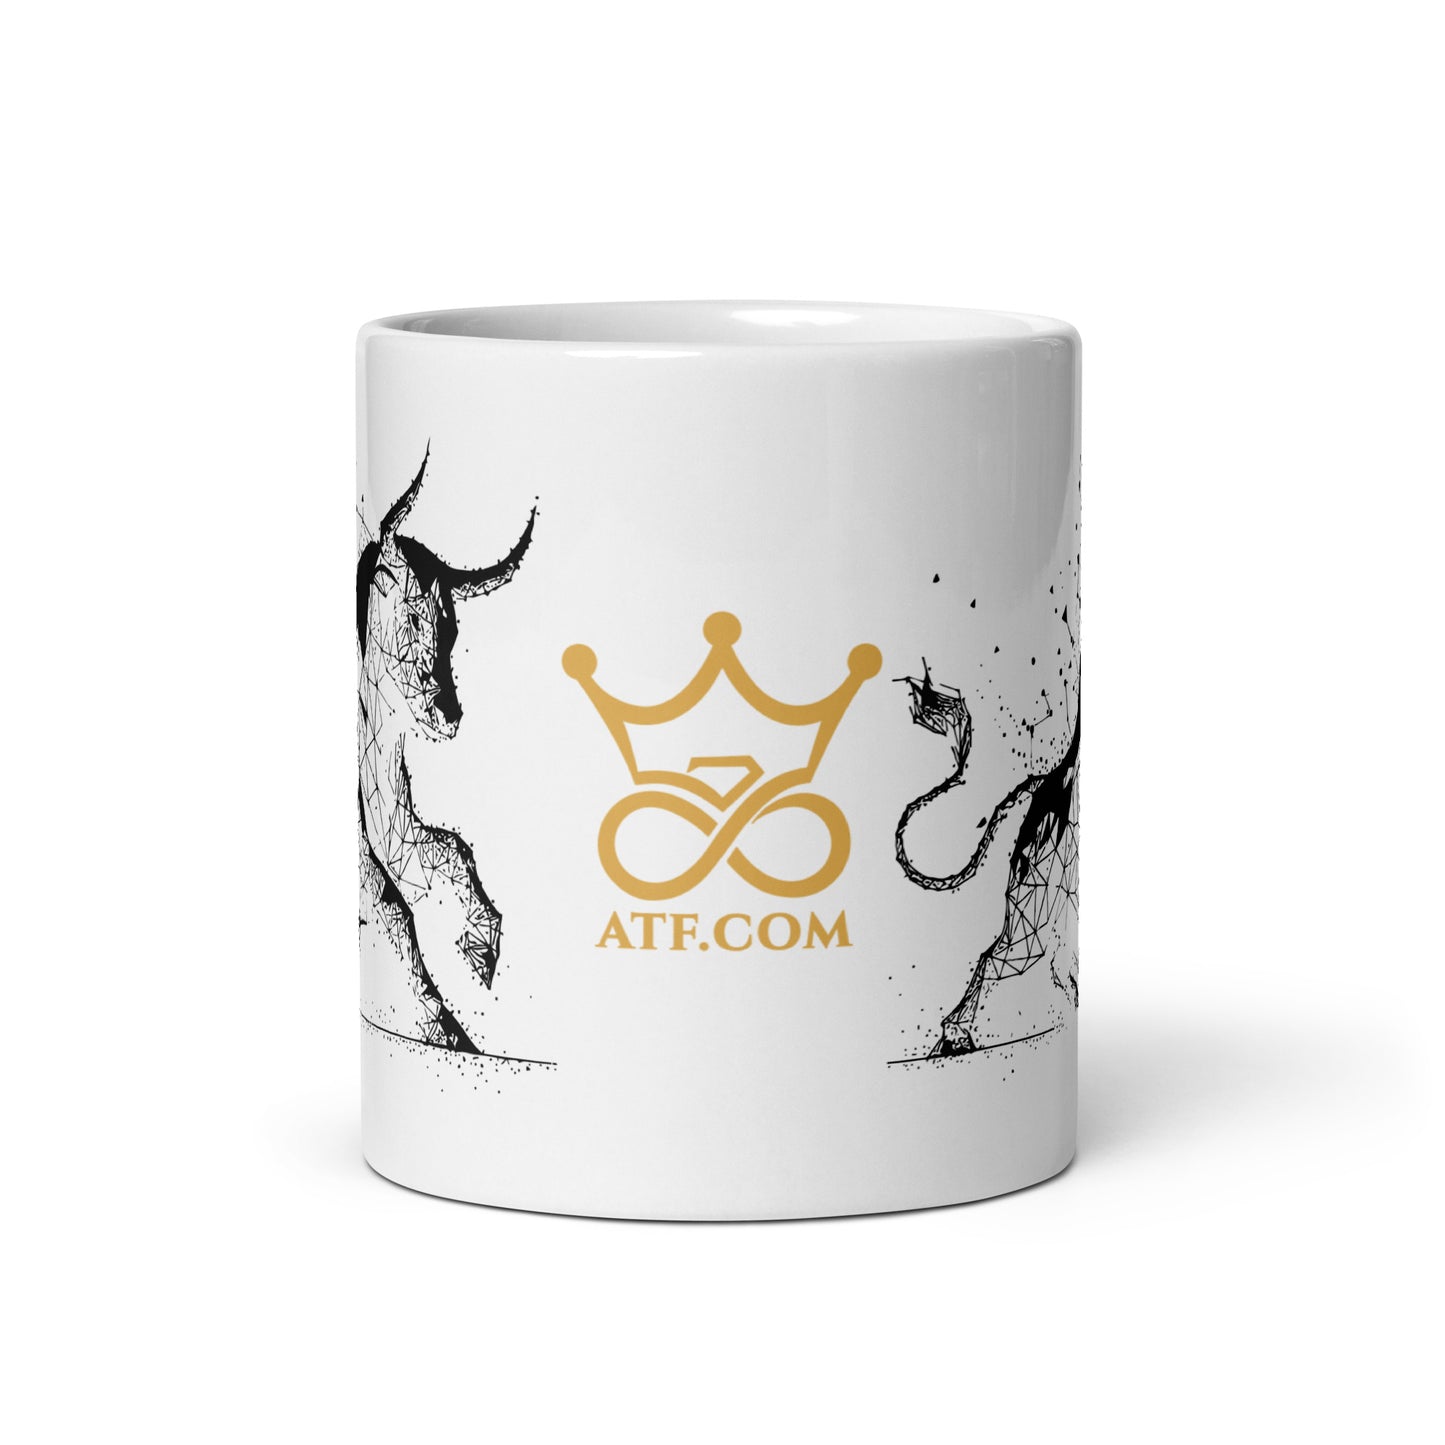 ATF.com Black Glossy Mug (SKU 0091)